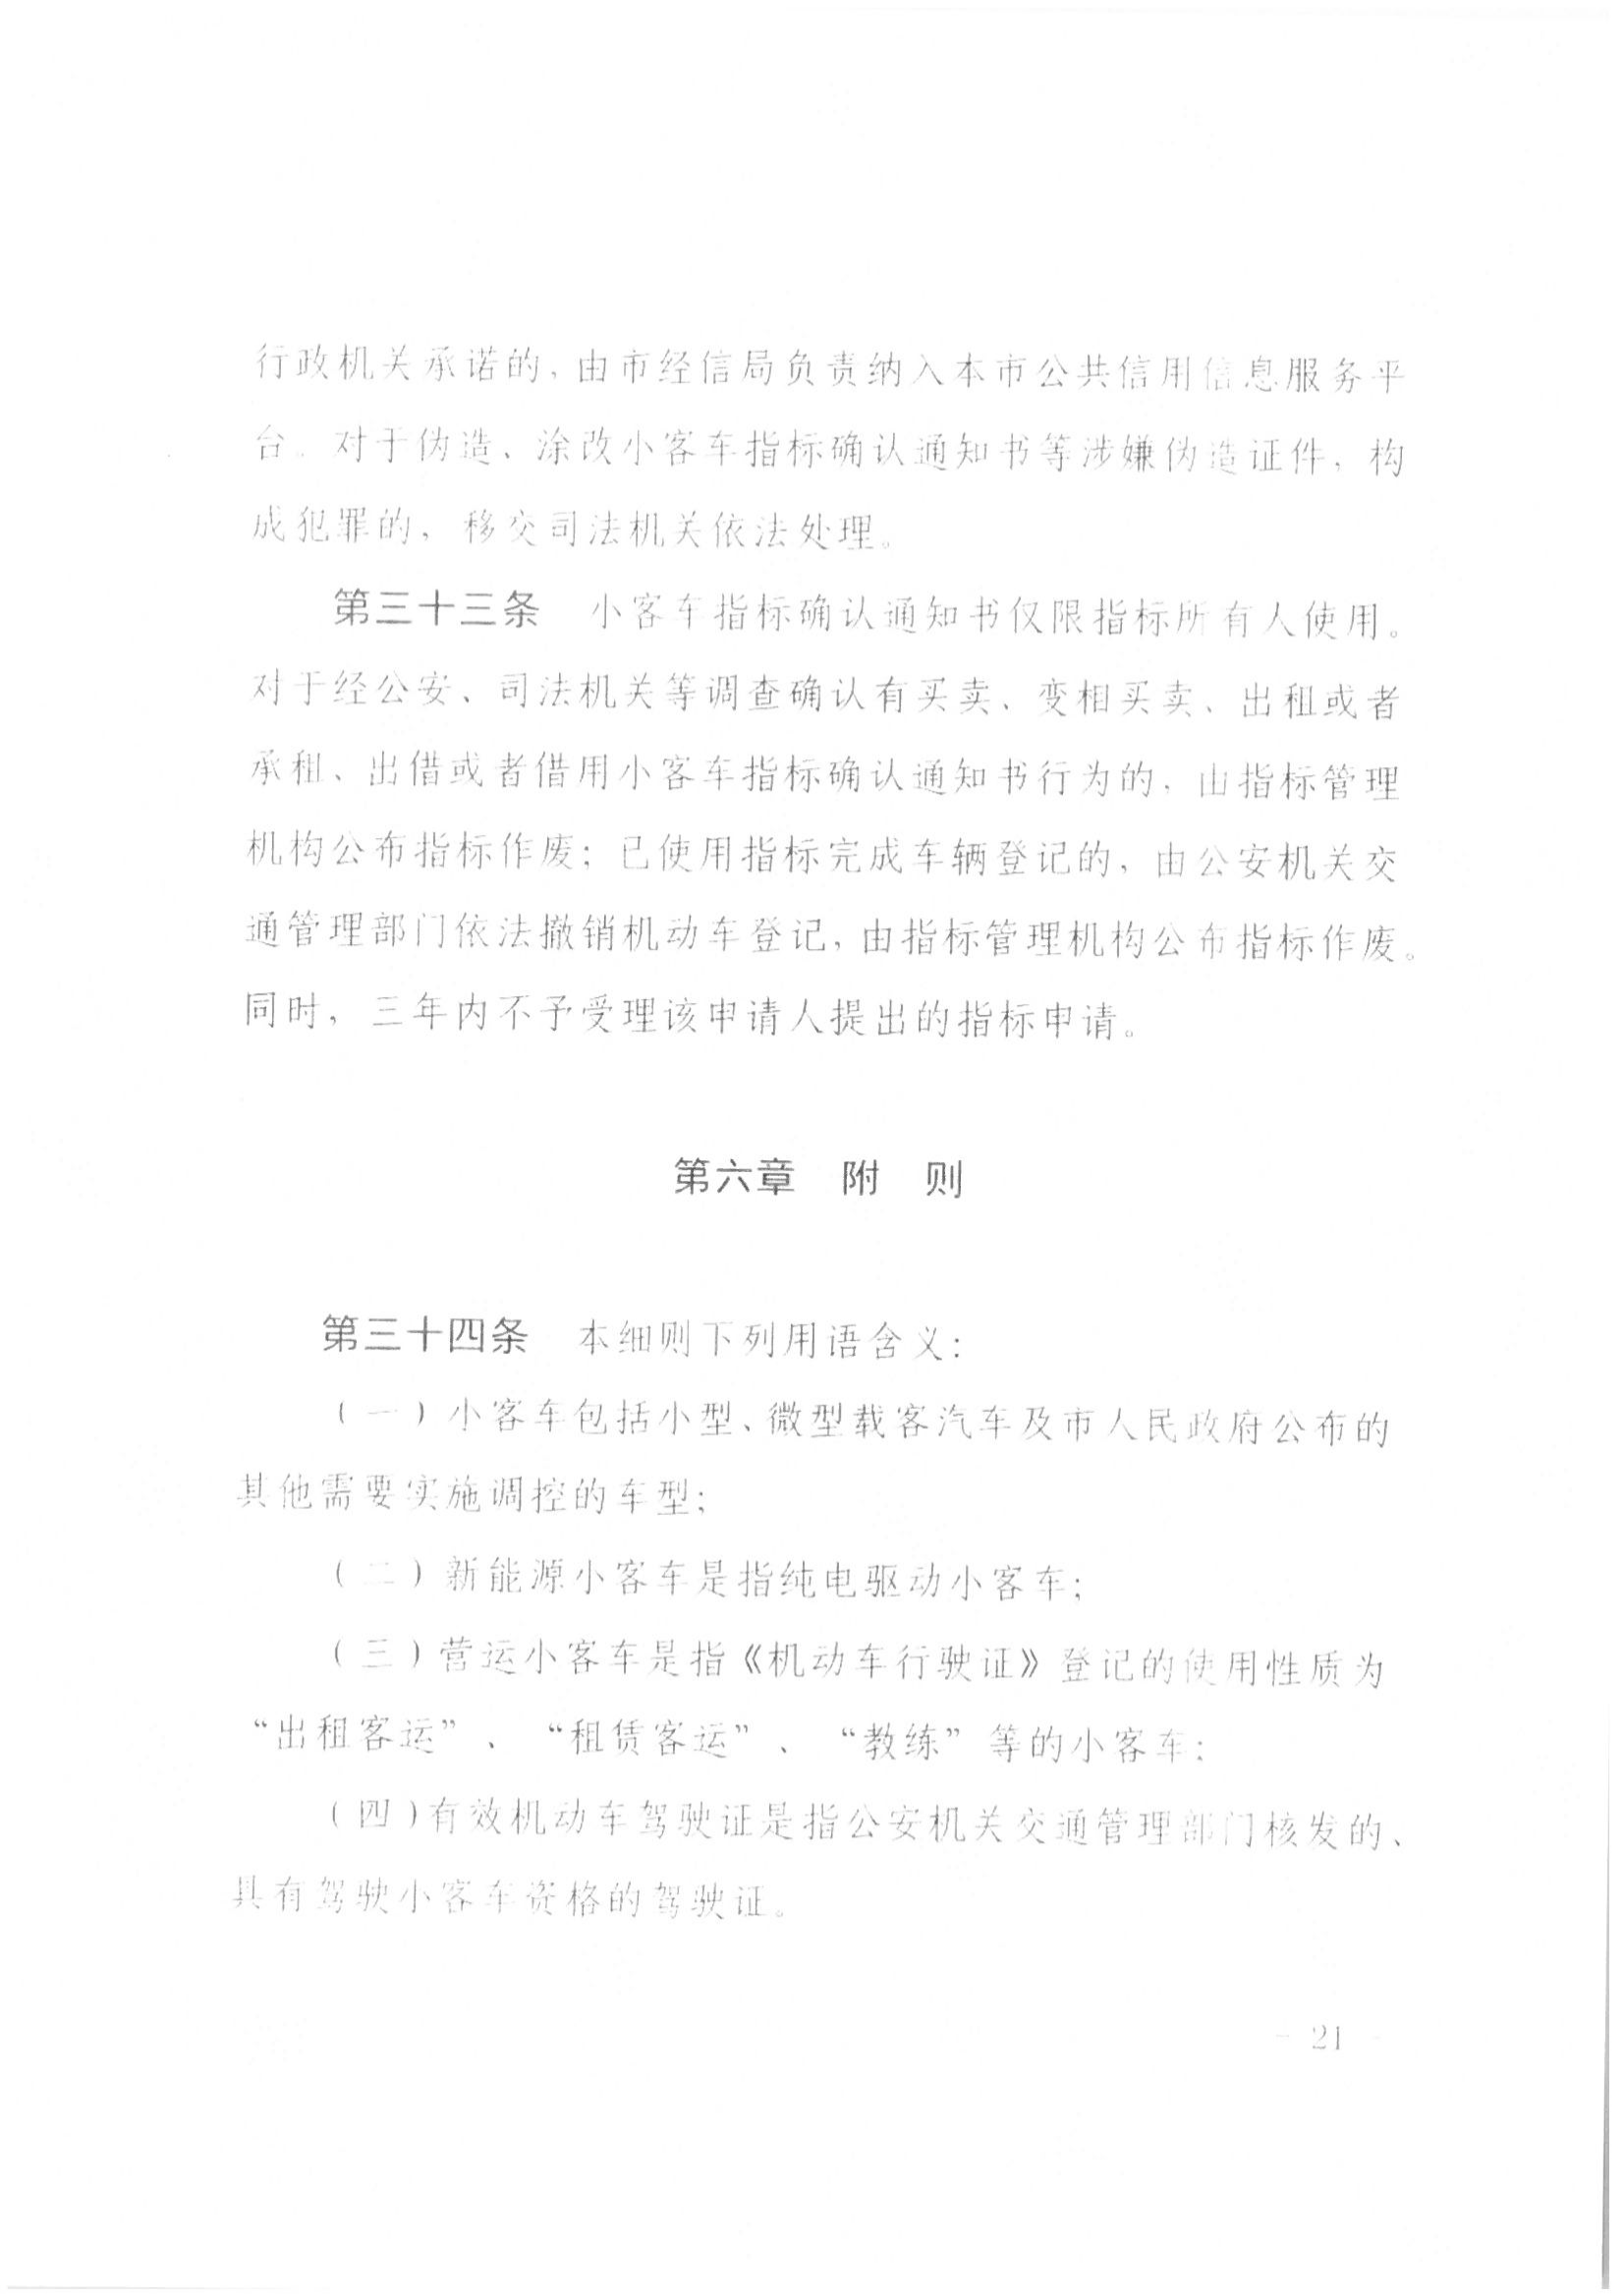 京公协字【2021】21号 北京市公证协会规范执业指引【第13号】_44